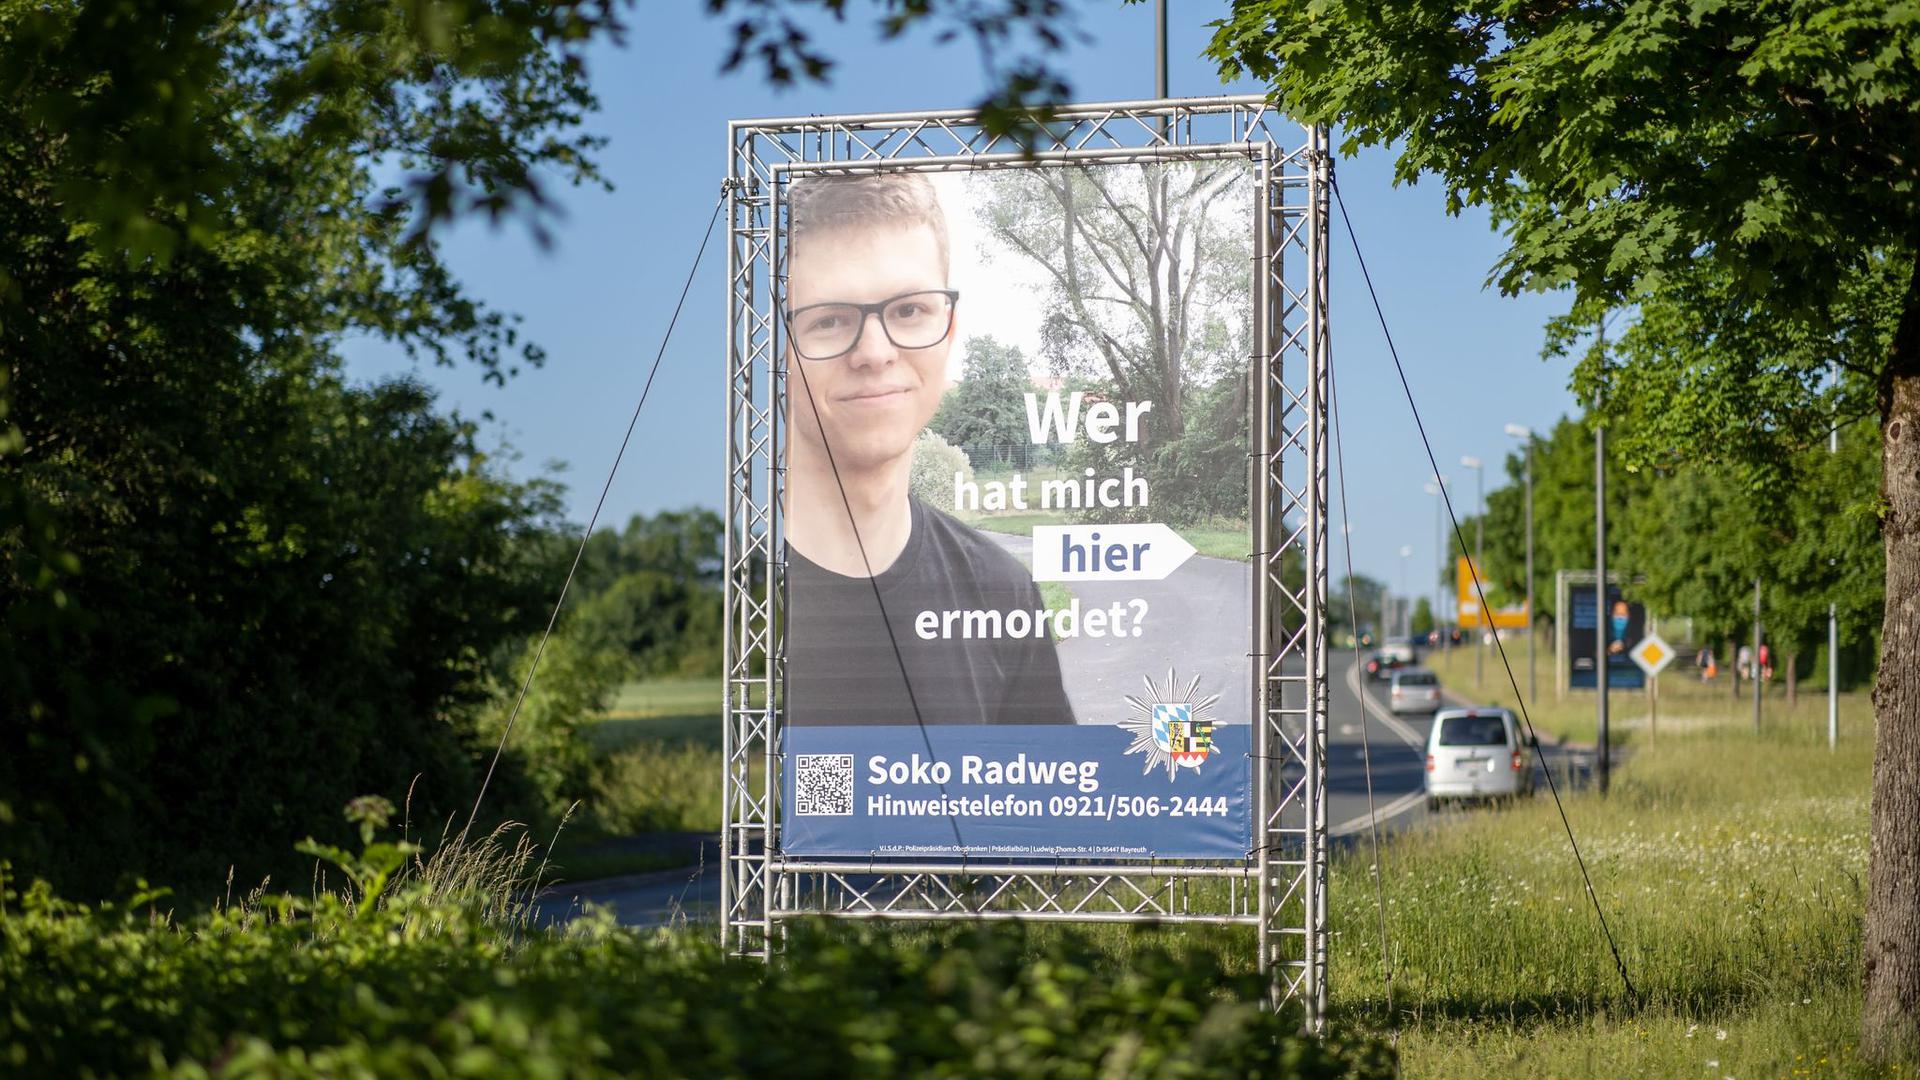 Auch eine Ausstrahlung in der ZDF-Sendung „Aktenzeichen XY... ungelöst“ brachte keine Erkenntnisse: Jetzt sollen Plakate helfen, den Mord an einem 24-Jährigen aus Bayreuth aufzuklären.